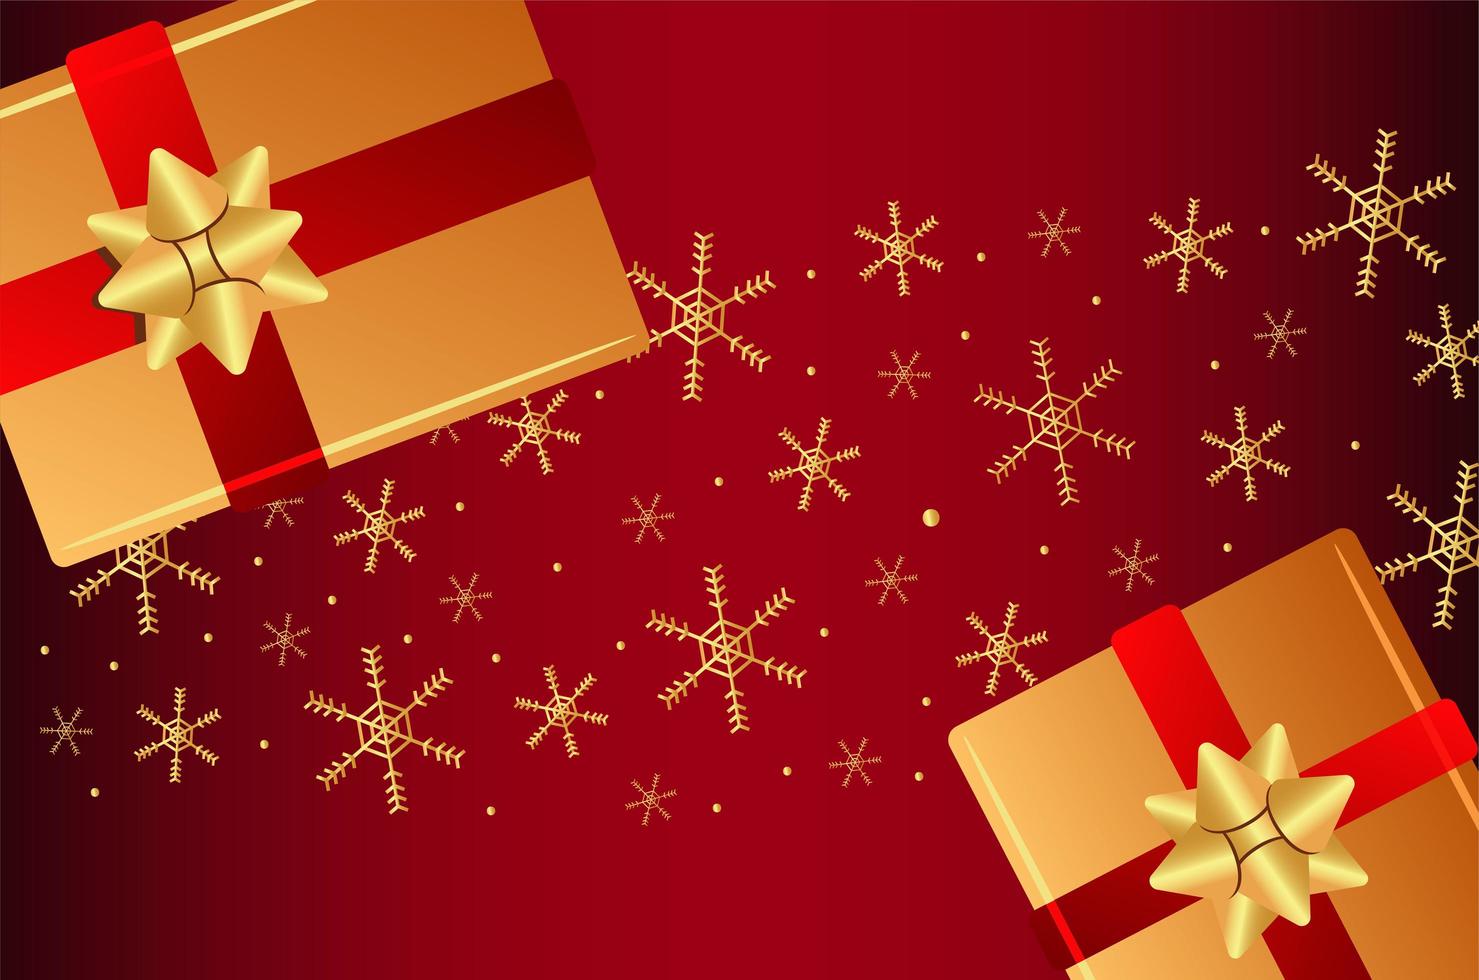 buon natale e felice anno nuovo lettering card con regali dorati e fiocchi di neve vettore